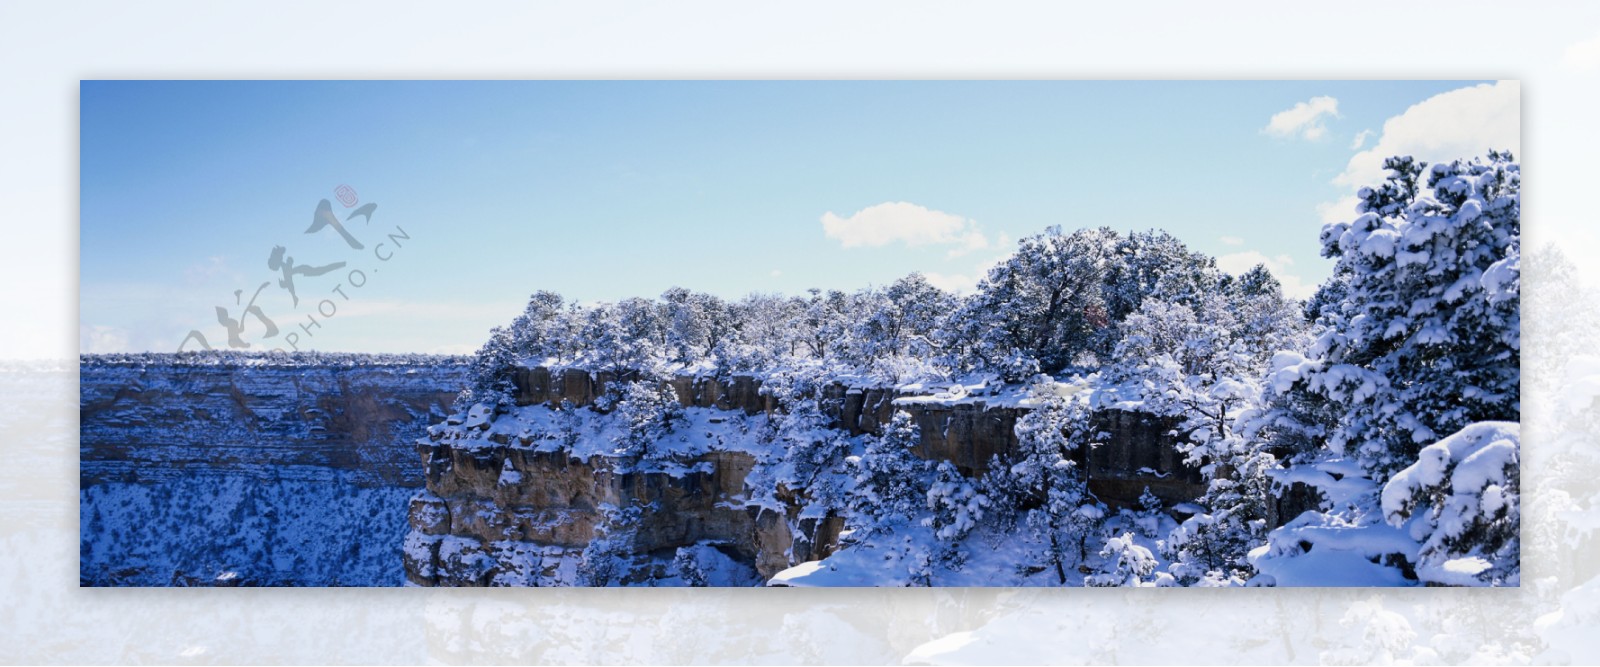 山崖雪景图片